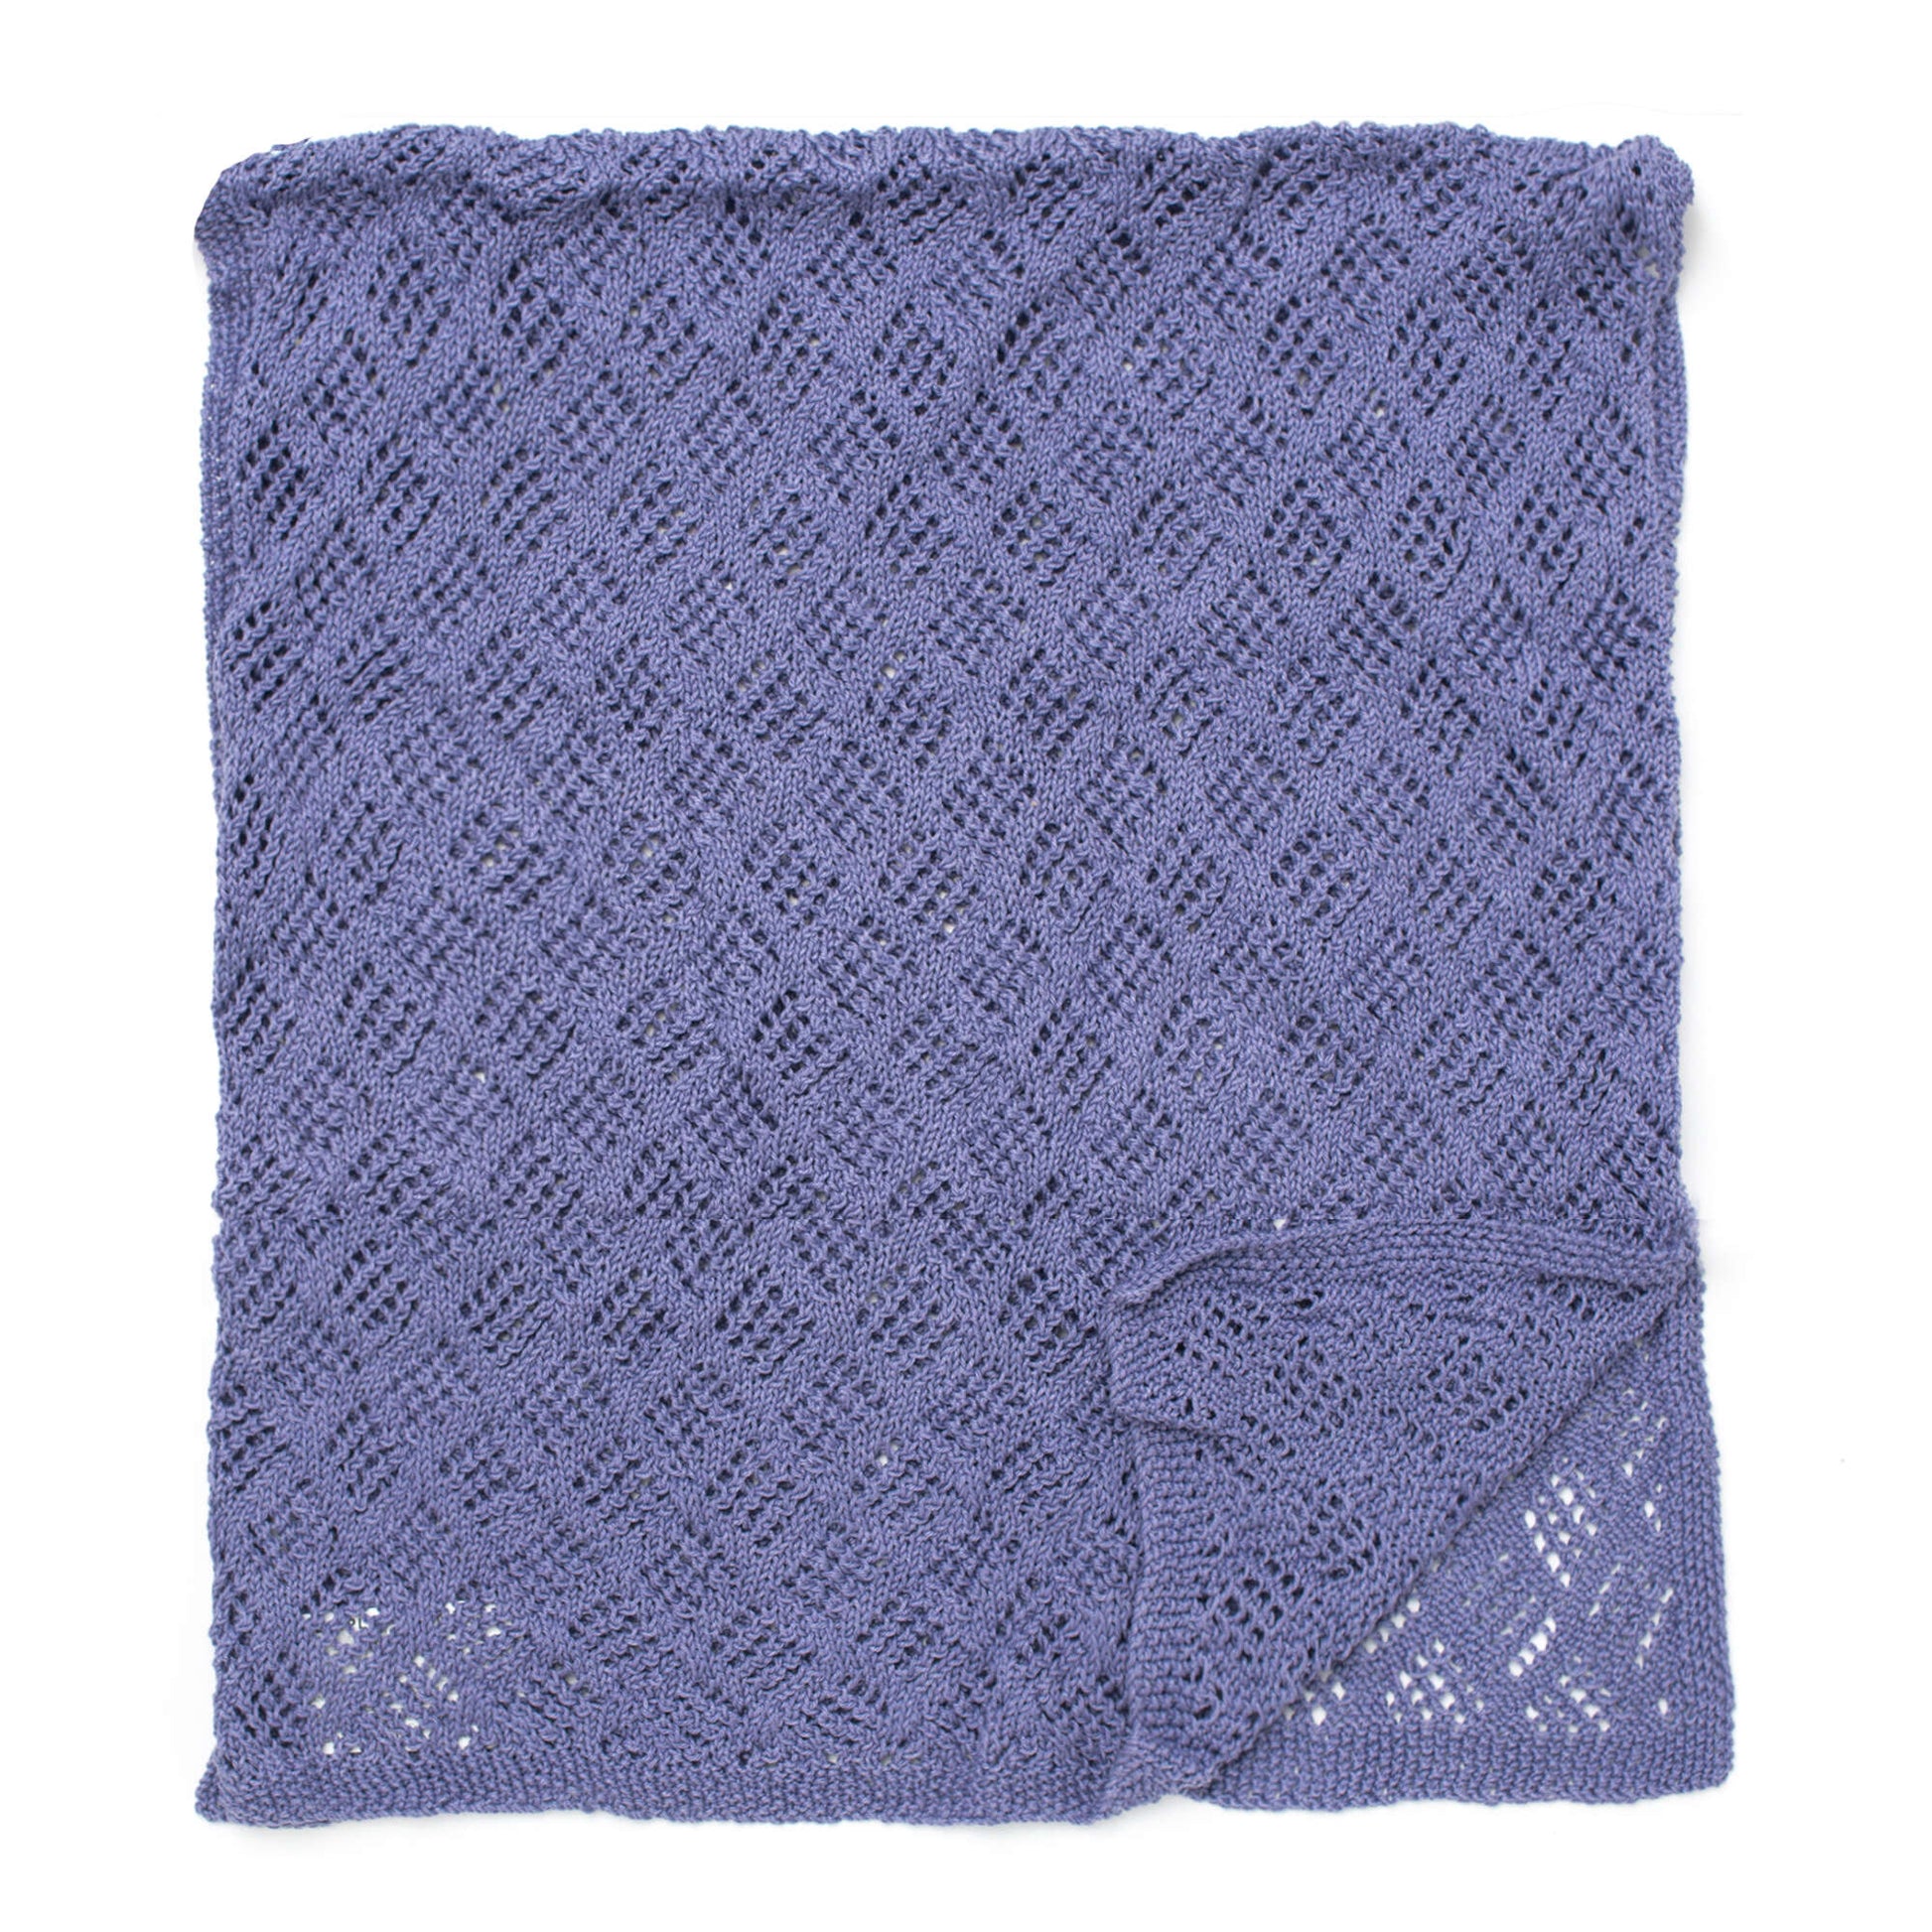 Free Patons Knit Diamond Lace Wrap Pattern